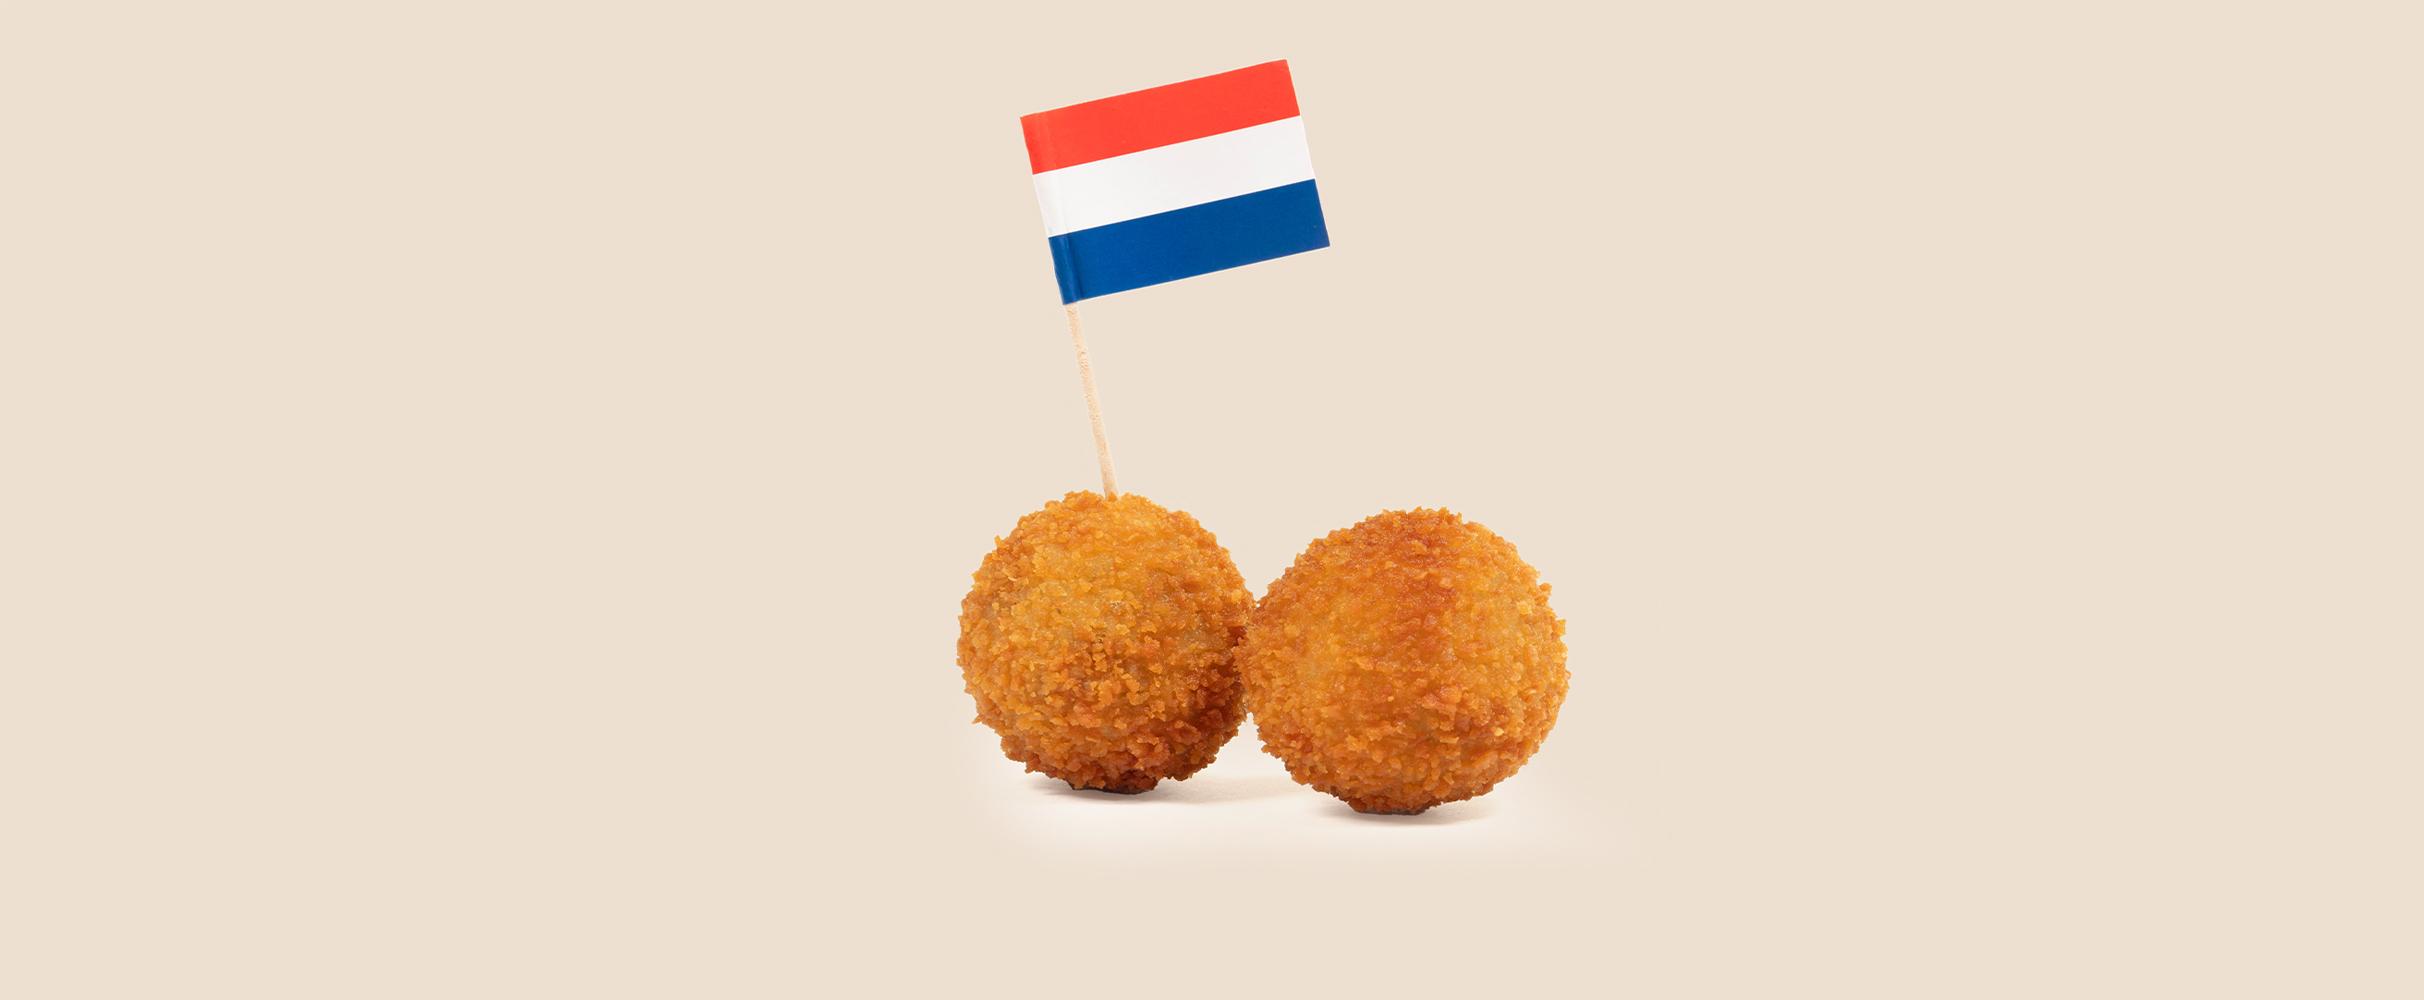 Kringverjaardagen en zeven andere Nederlandse dingen waar jij stiekem ook van geniet